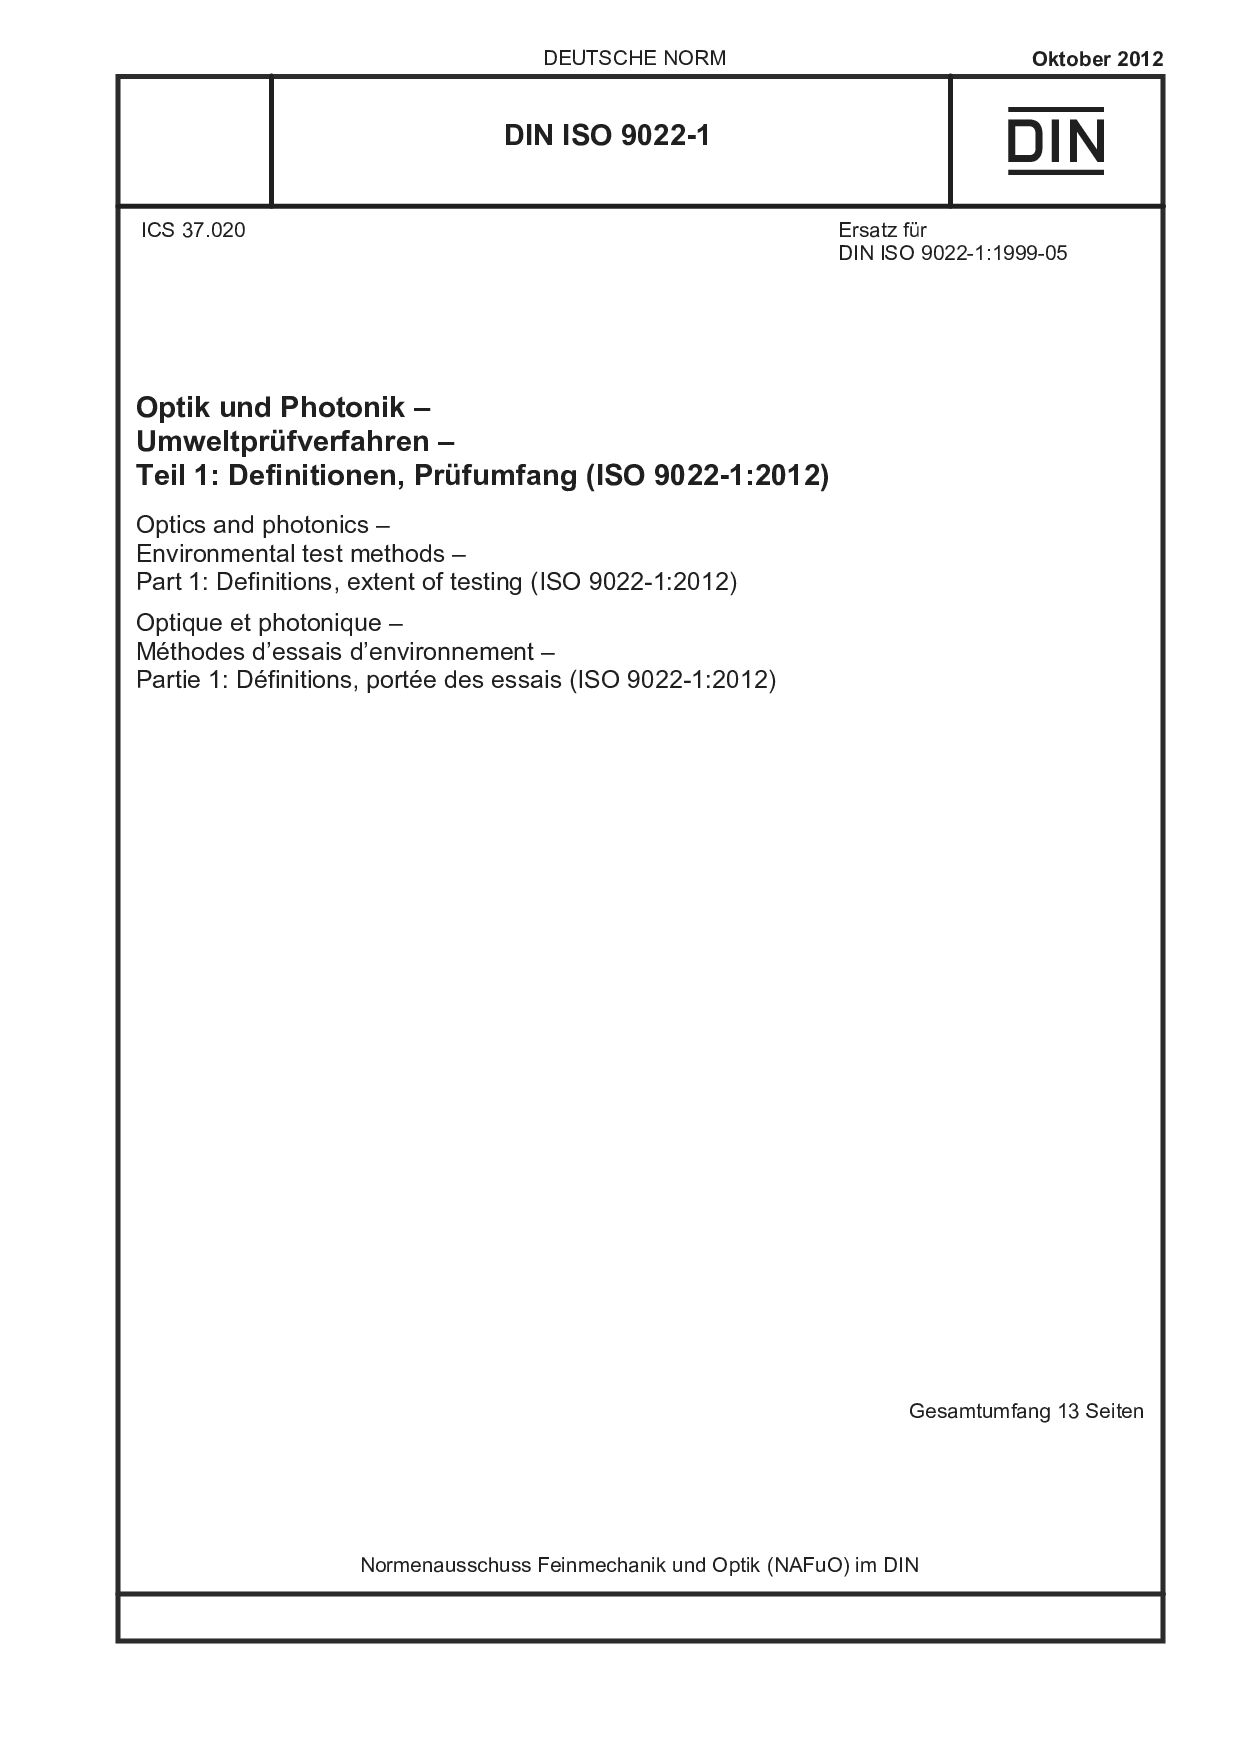 DIN ISO 9022-1:2012封面图